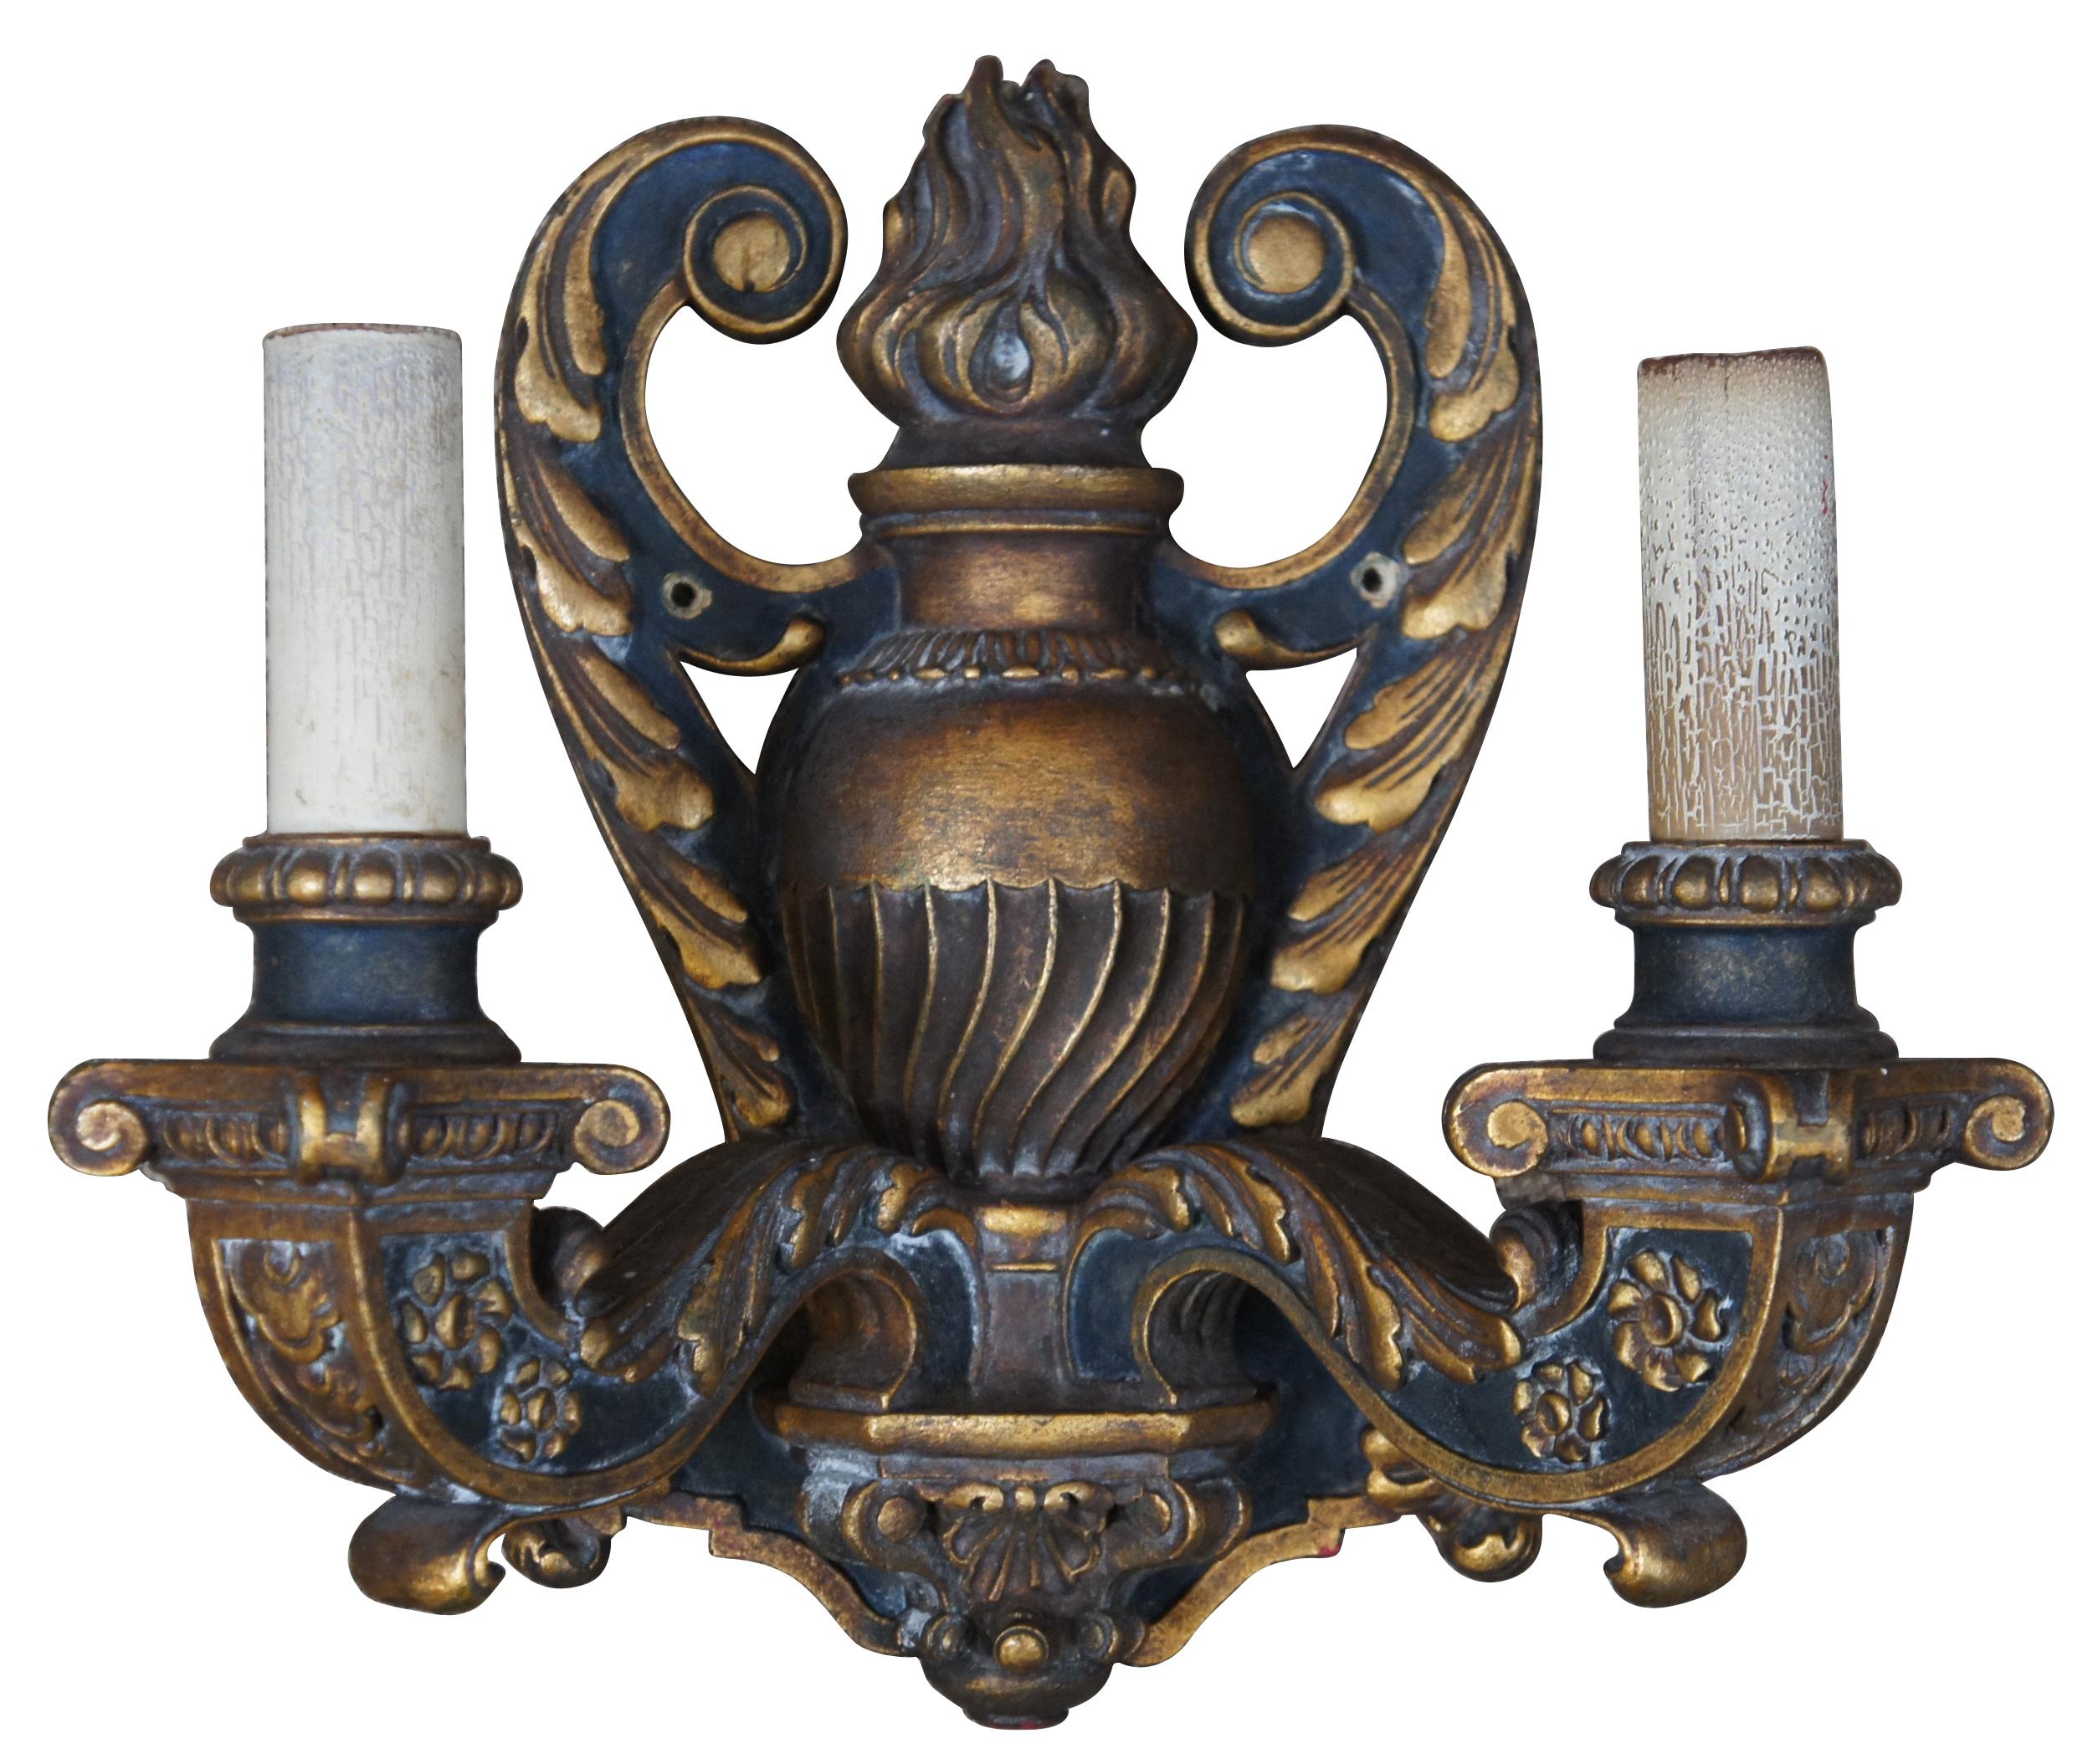 CIRCA 1910 Barockrevival elektrifizierte Wandleuchter.  Zweiarmiger Kandelaber mit blatt- und blumengeschmückten Leuchtern um eine zentrale flammende Urne.  Hergestellt aus Holz mit schwarzer und goldener (dore) Lackierung.
